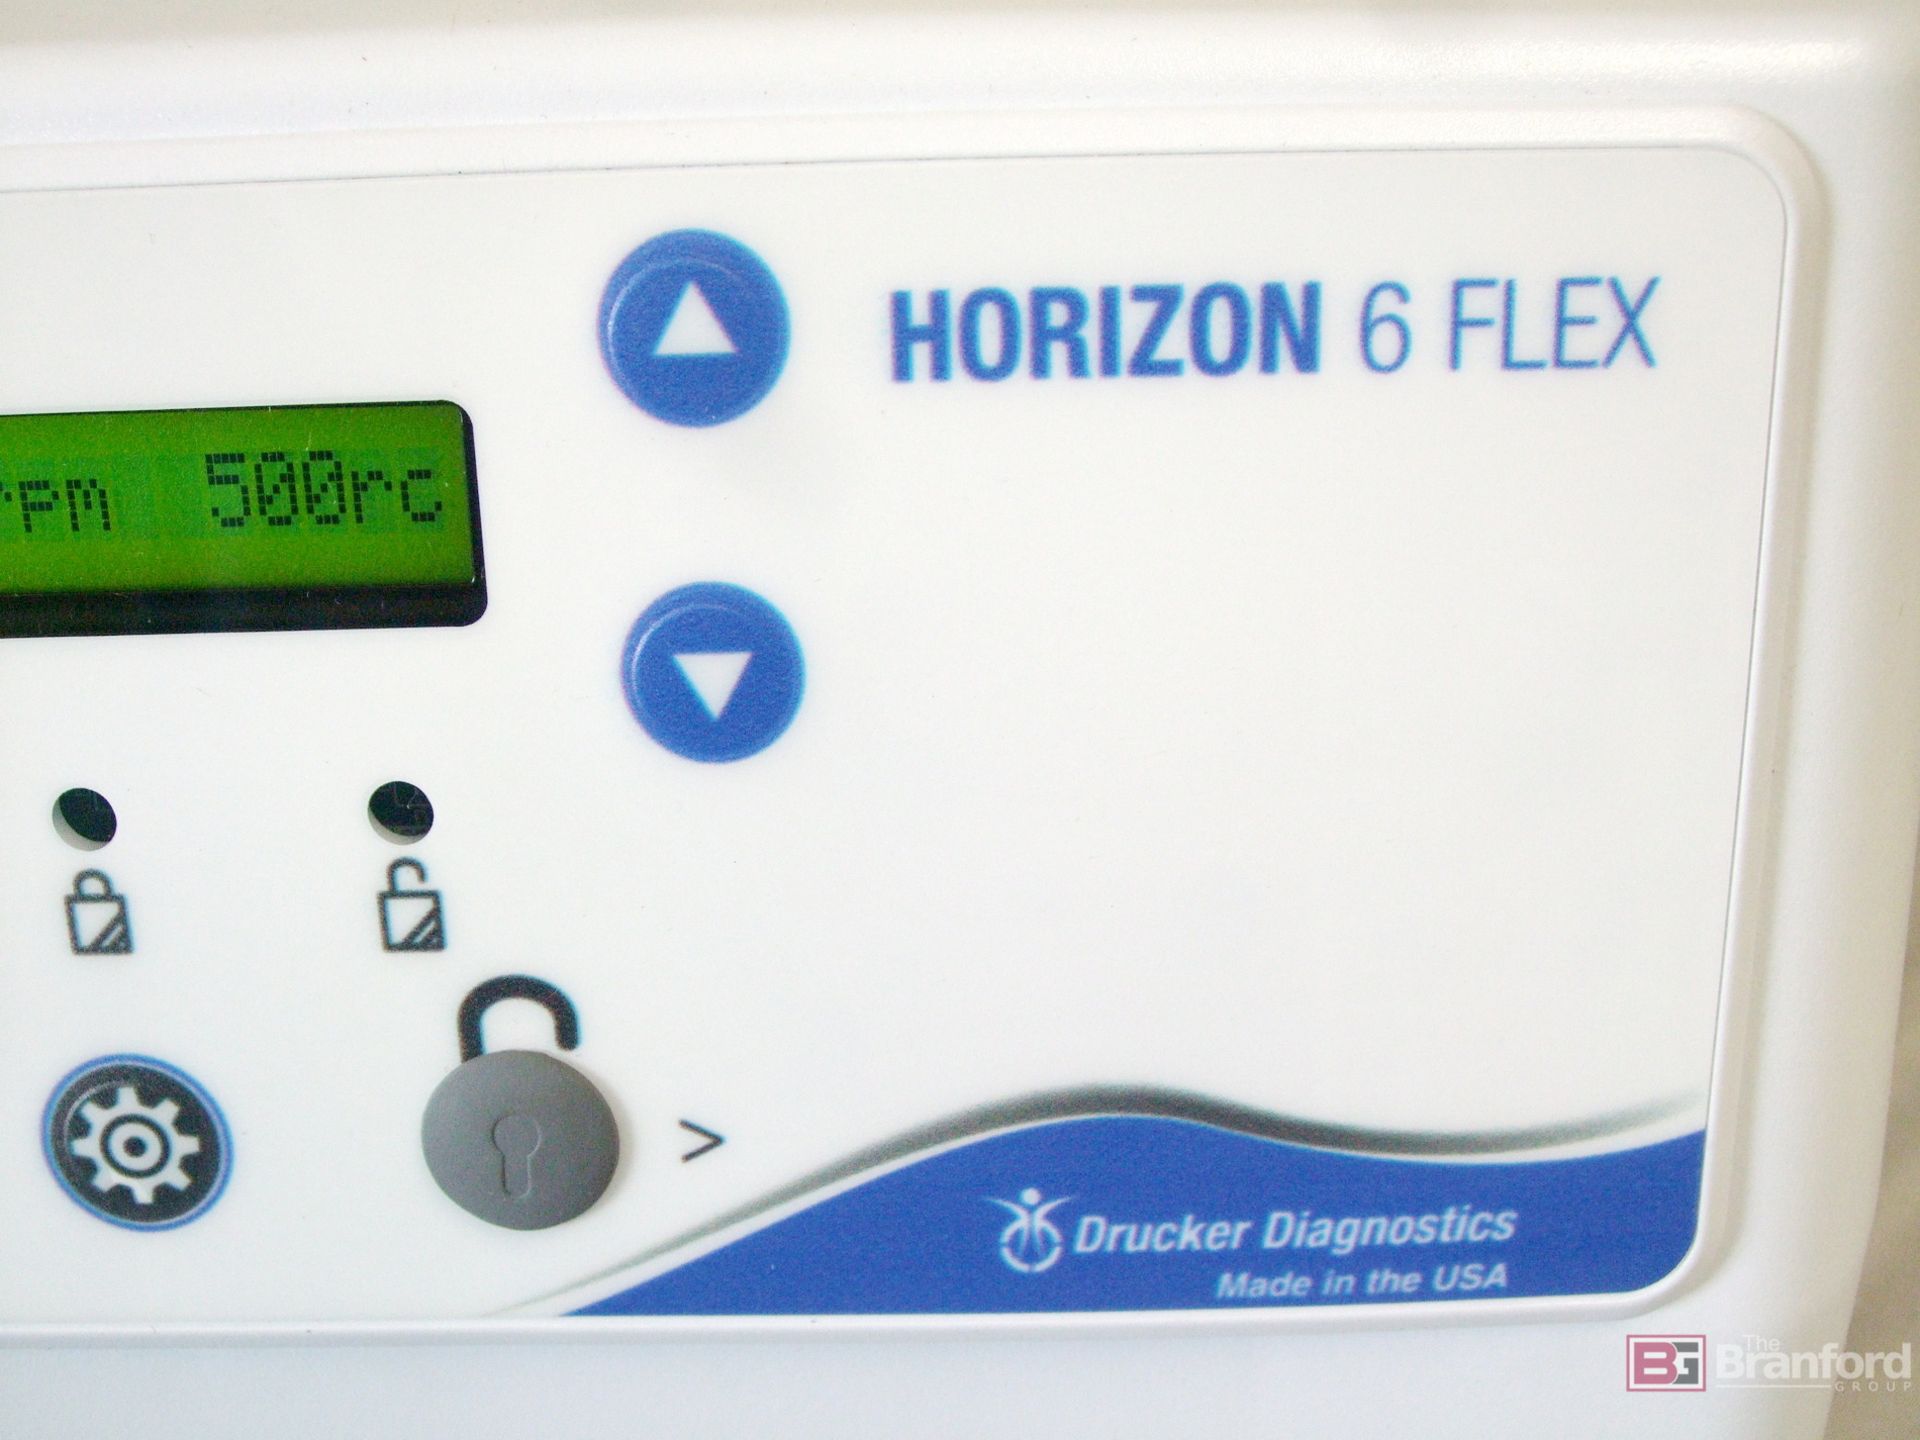 Drucker Diagnostics Horizon 6 Flex Centrifuge - USED - Image 3 of 9